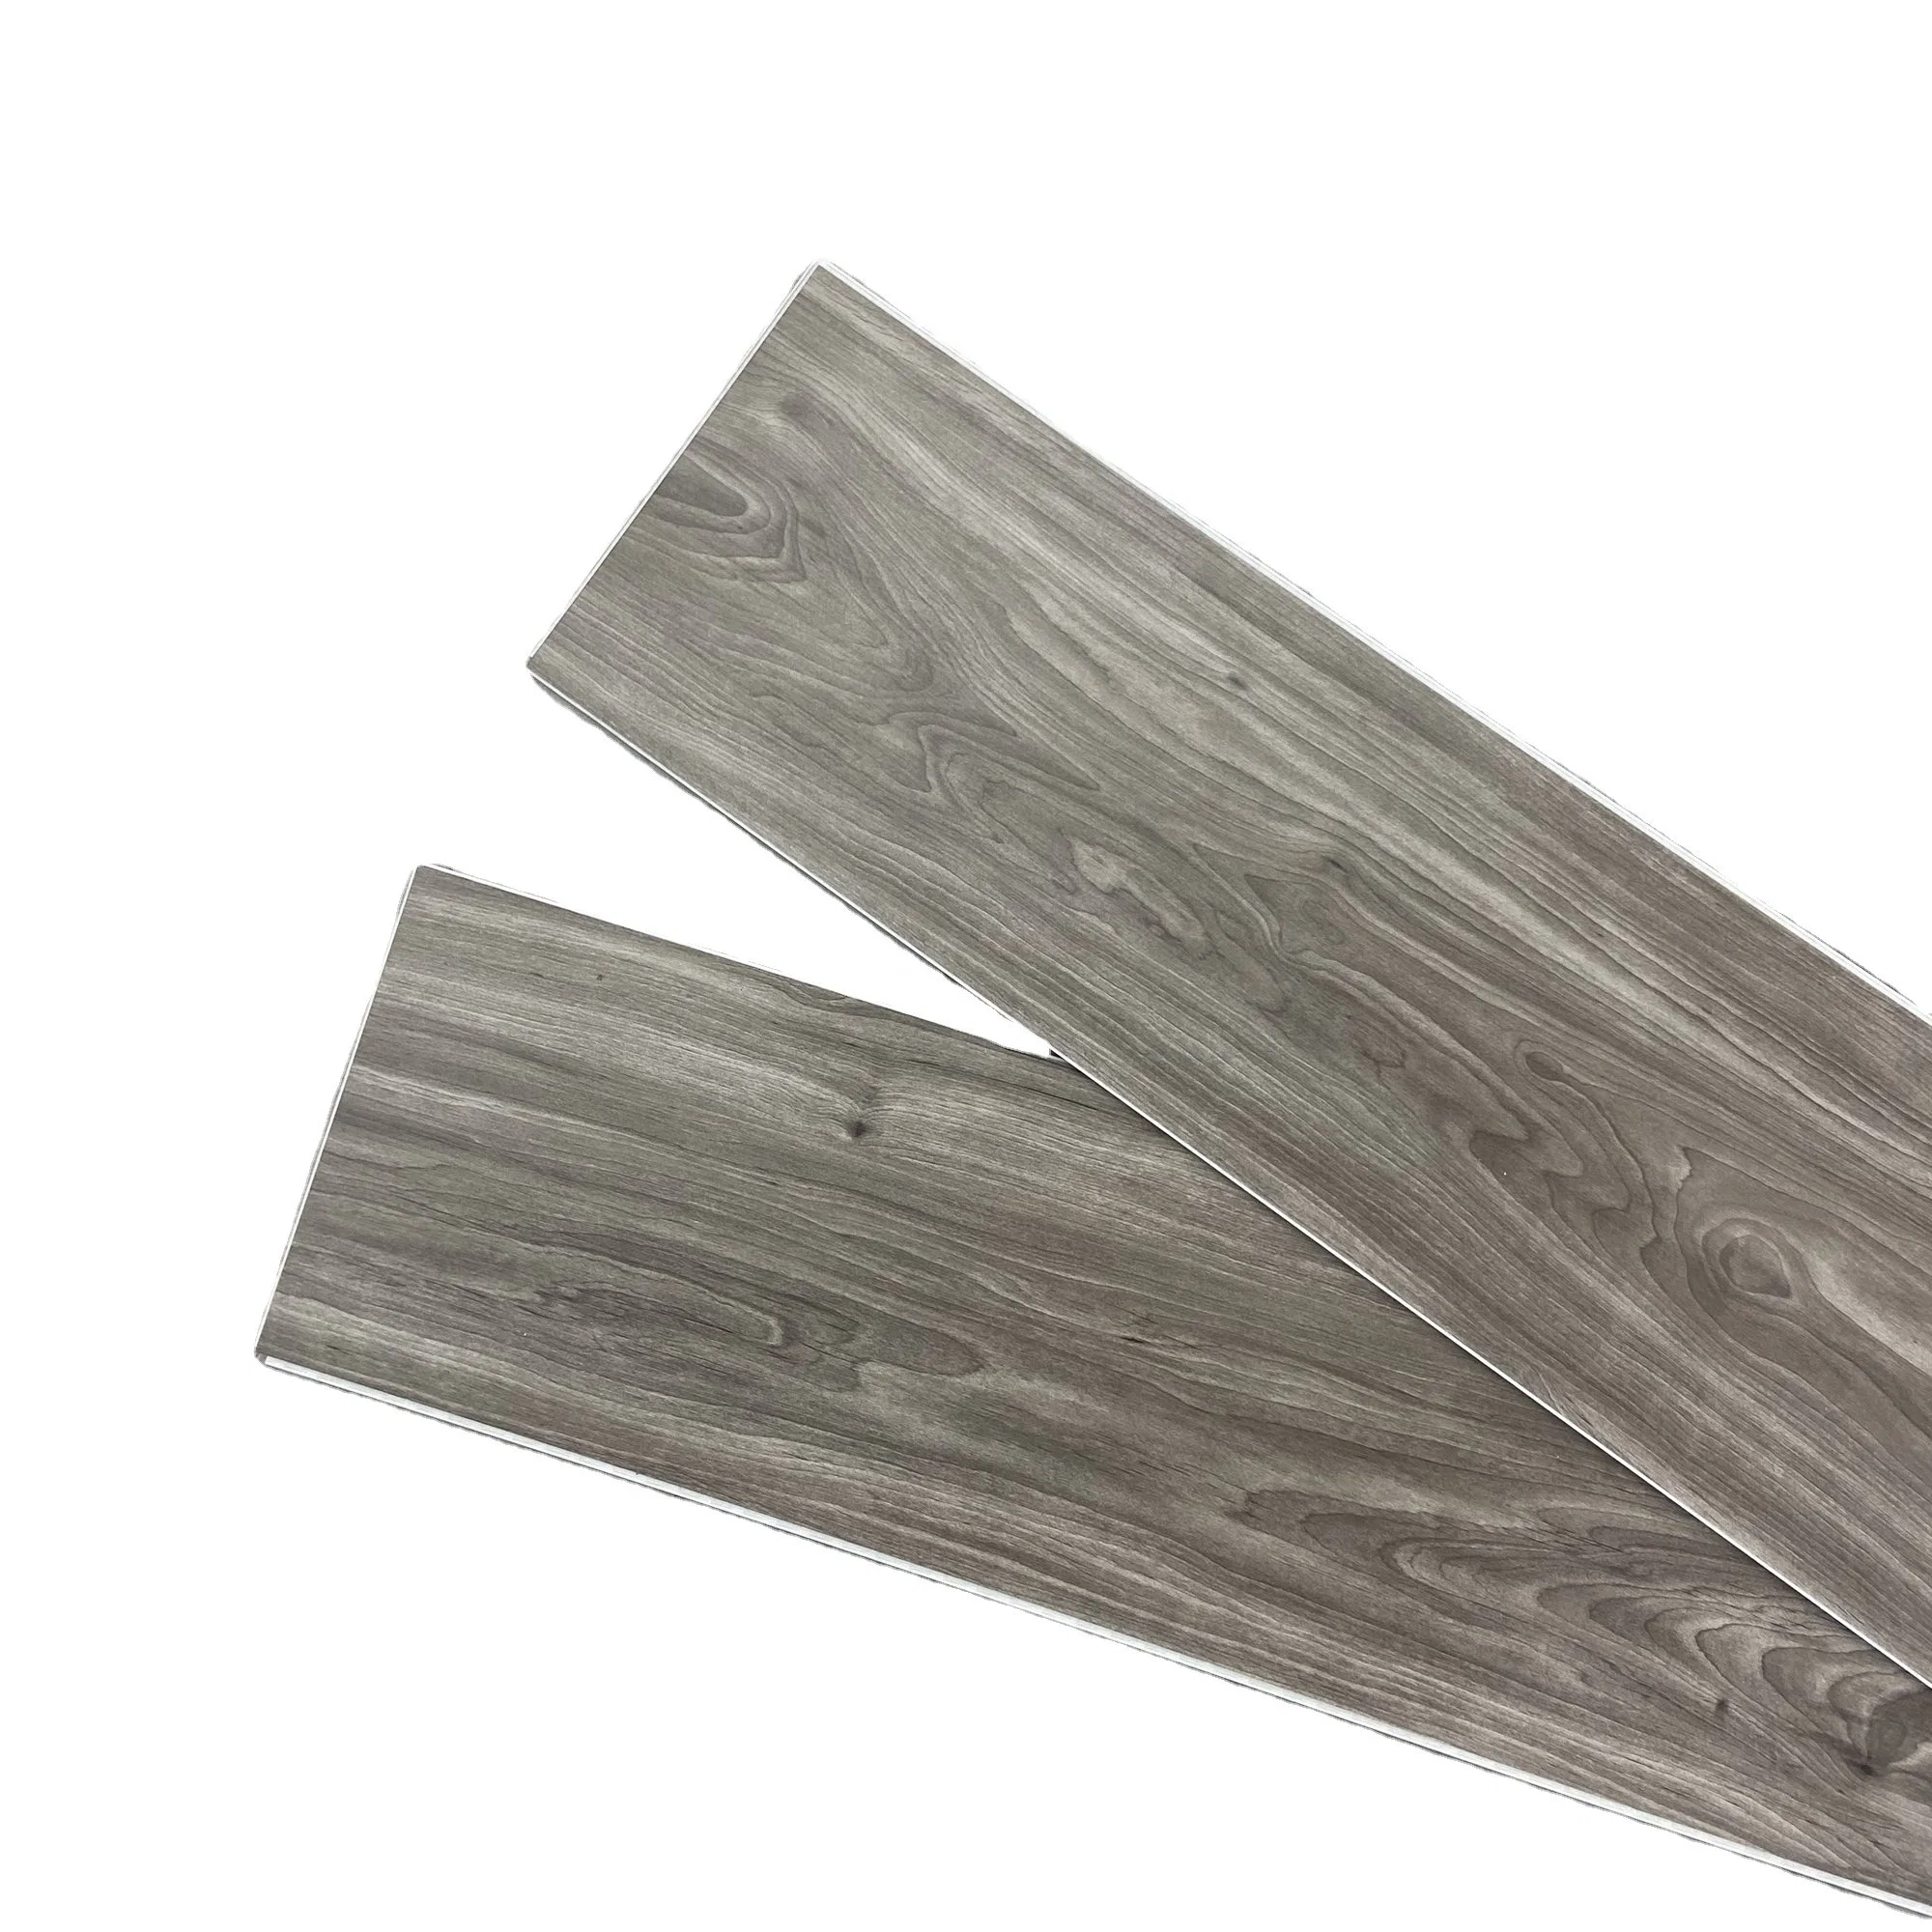 Stone composto de plástico e auto-adesivo Plank Vinil estilo madeira PVC plástico piso piso com preço competitivo Qualidade